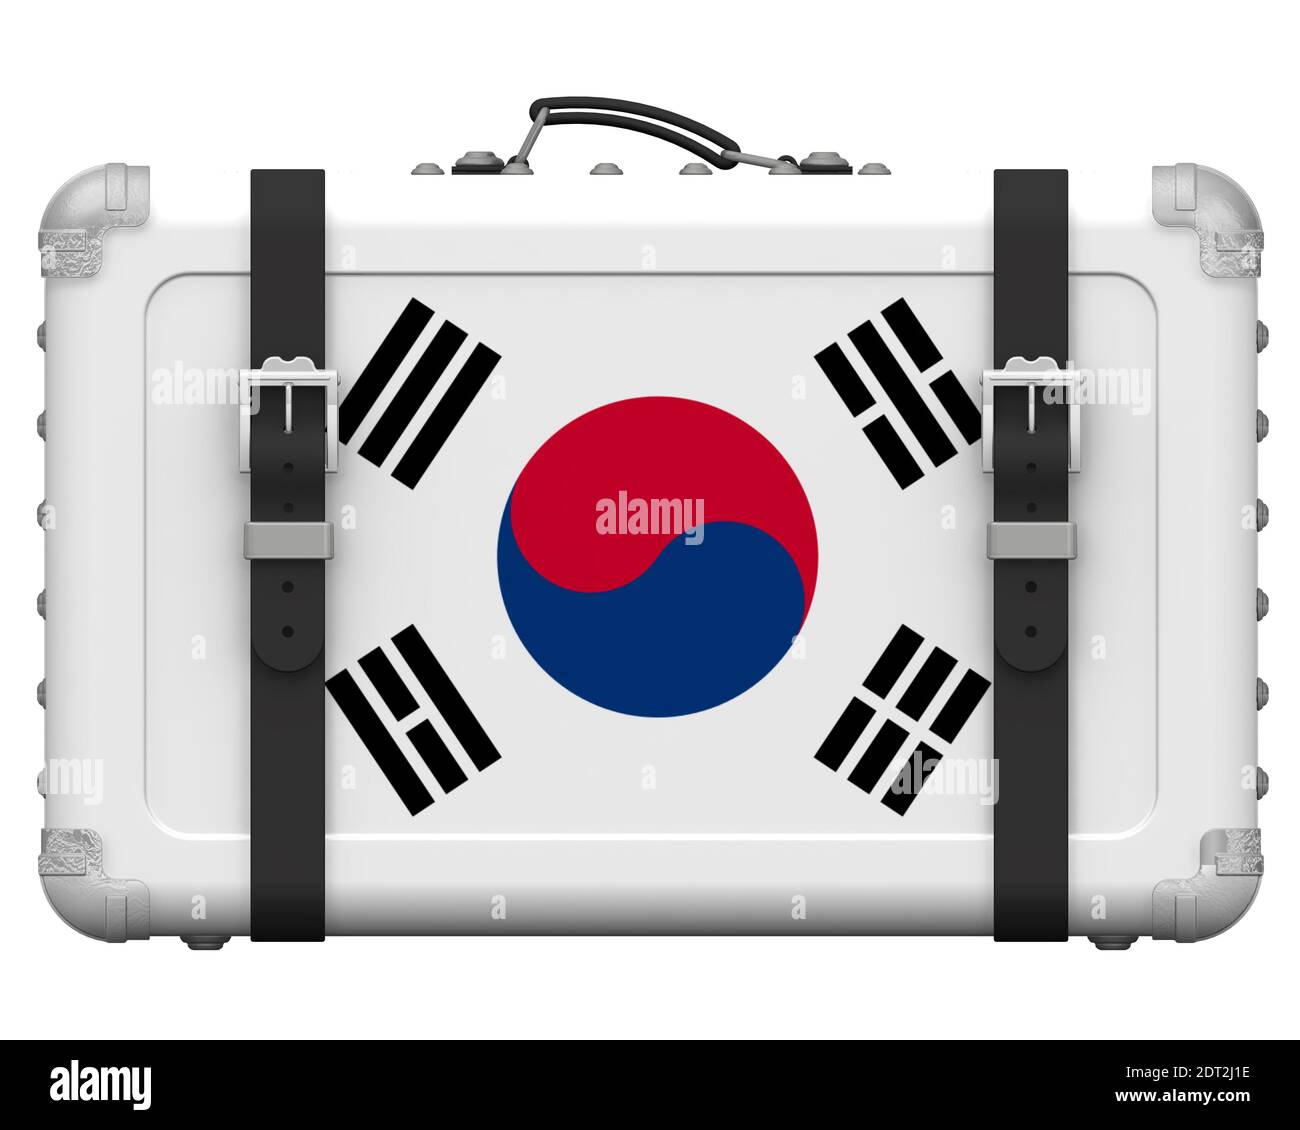 Elegante valigia con la bandiera nazionale della Corea del Sud. Valigia retrò con la bandiera nazionale della Repubblica di Corea si trova su una superficie bianca Foto Stock